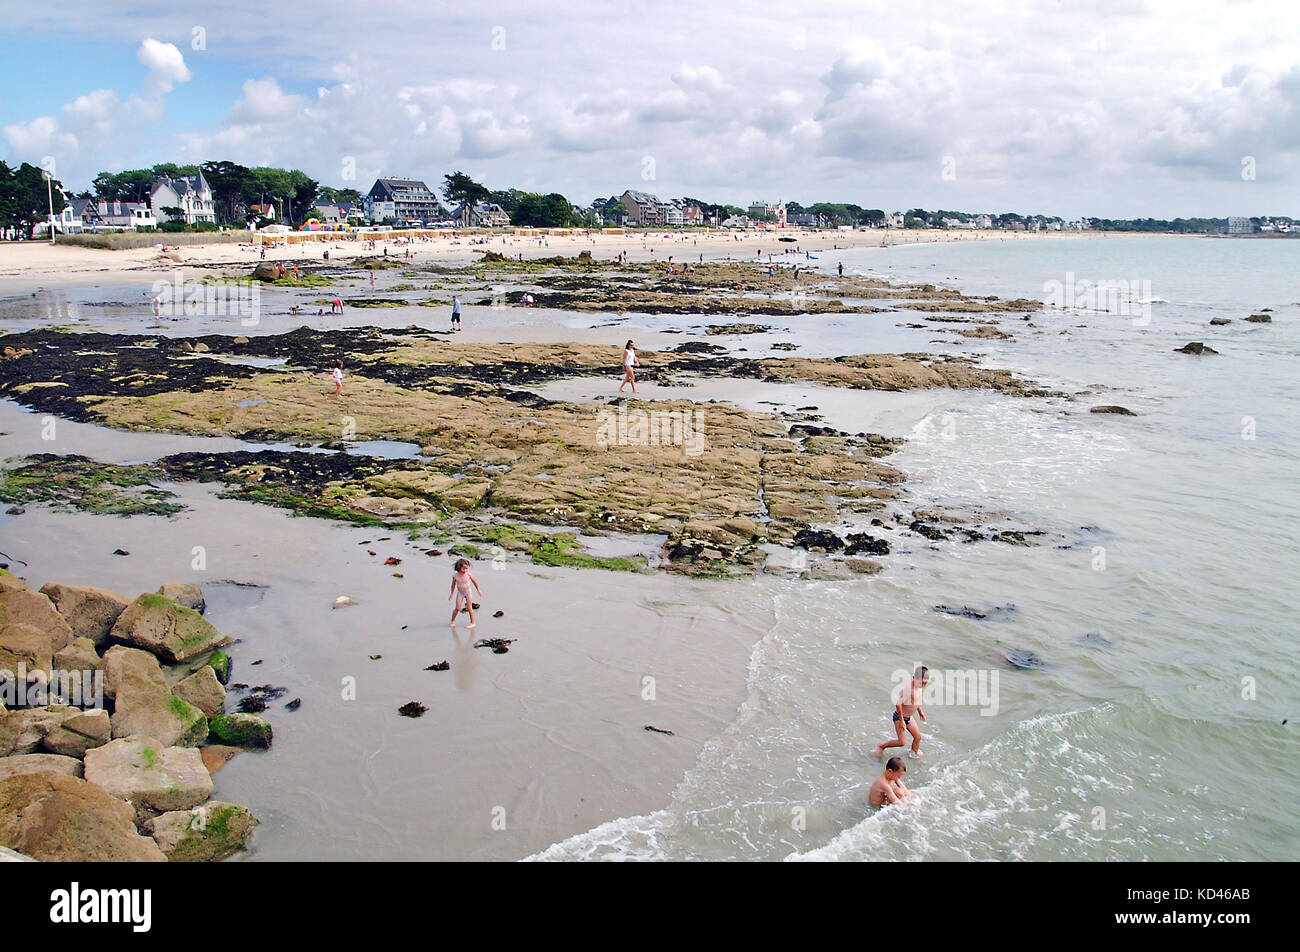 Carnac beach, France Stock Photo